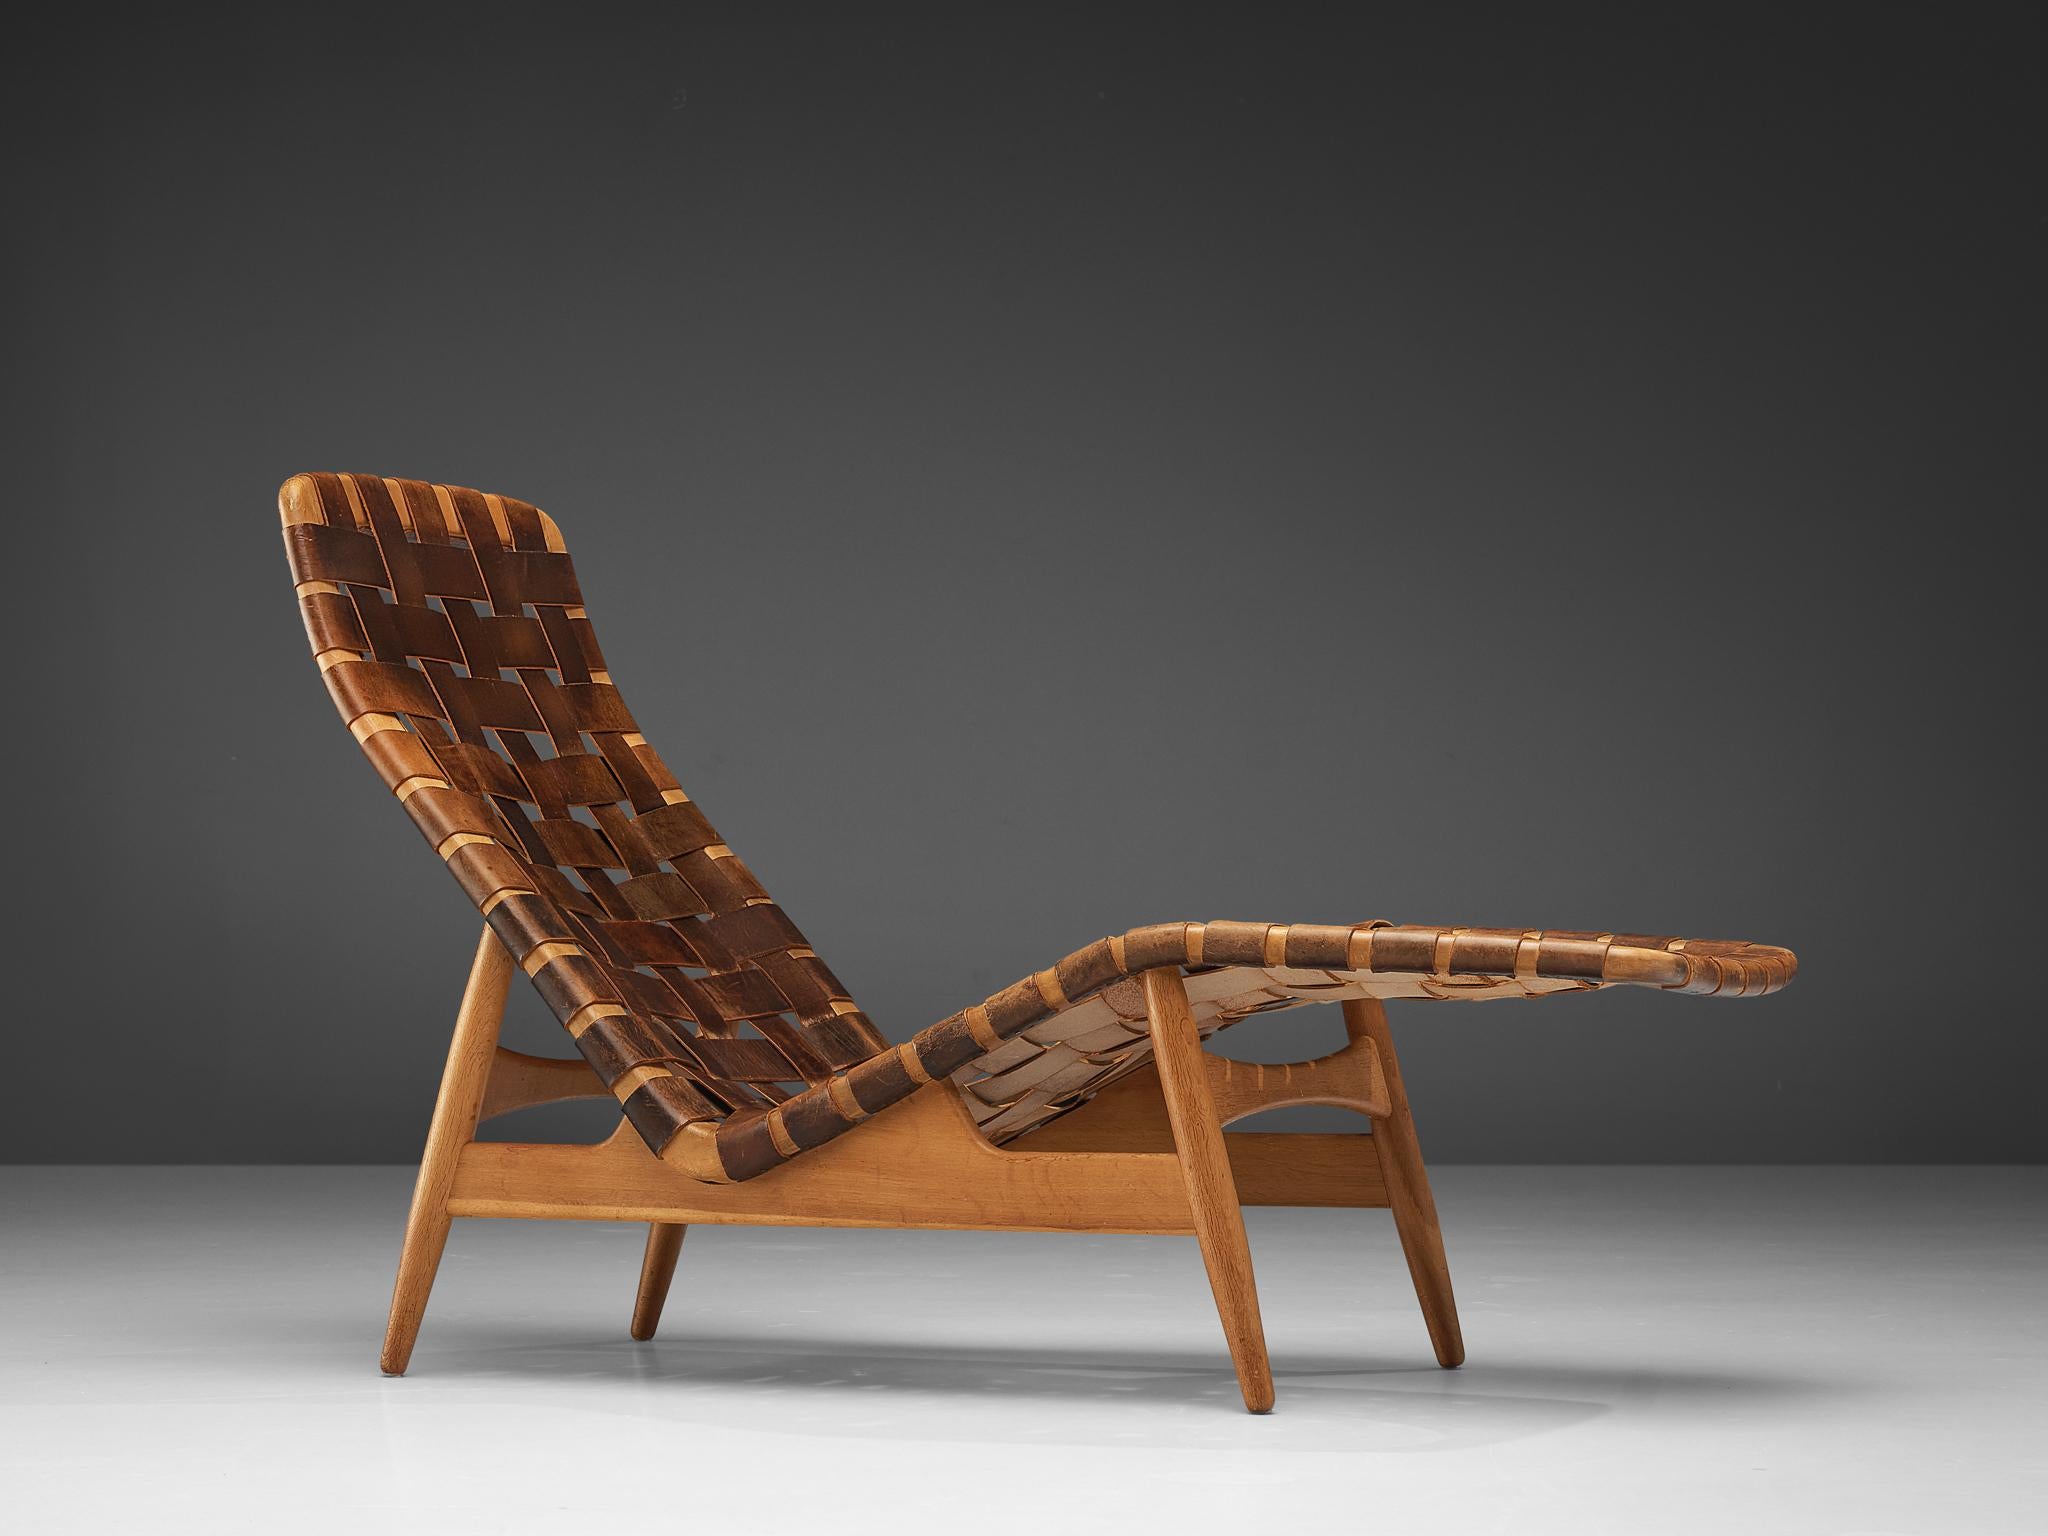 Arne Vodder para Bovirke, chaise longue, cuero, roble, Dinamarca, años 50.

Chaise longue diseñada por Arne Vodder para Bovirke en la década de 1950. Esta chaise longue tiene un armazón abierto de madera de roble y un asiento creado con correas de